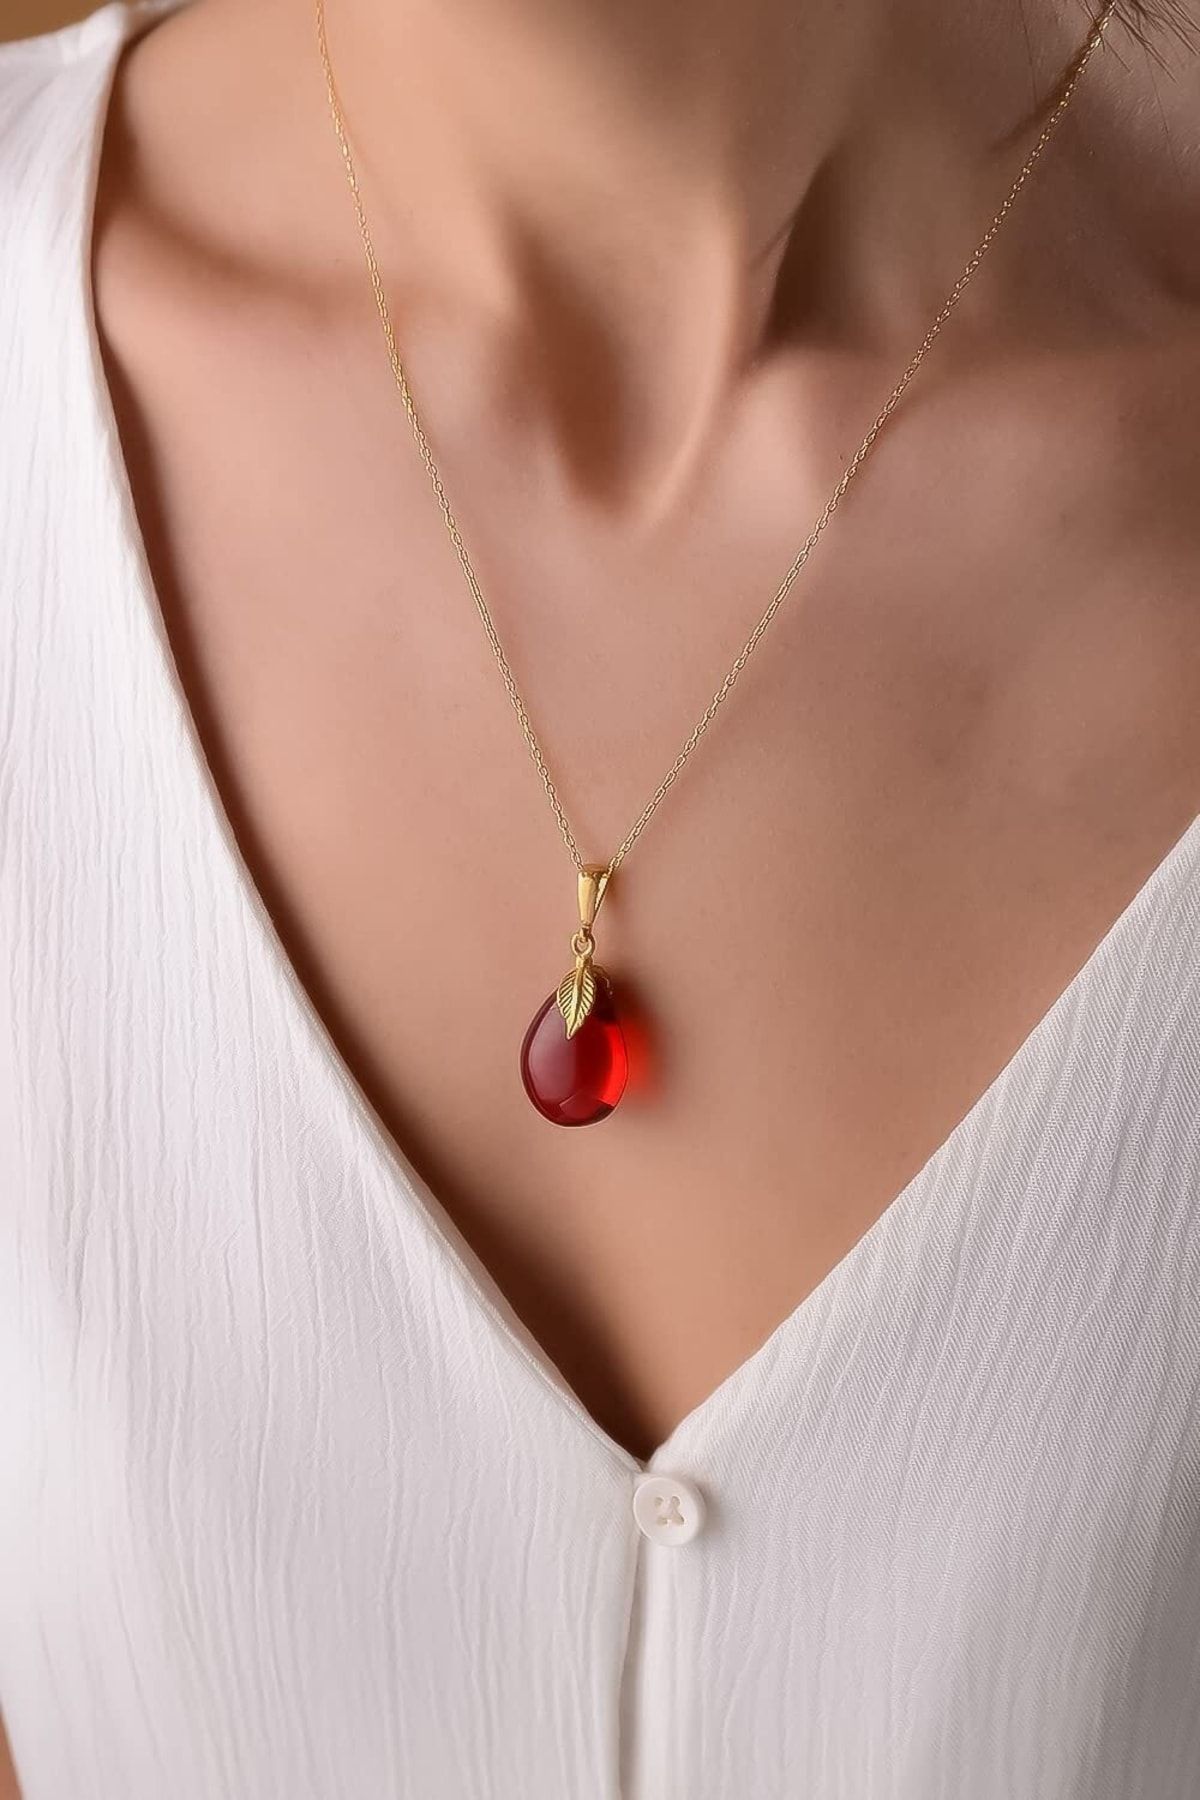 Amberistan Yetişkin Kırmızı Kehribar Kolye – Altın Kaplama Gümüş Zincir, Kehribar Mücevher, Kehribar Taşlı Takı